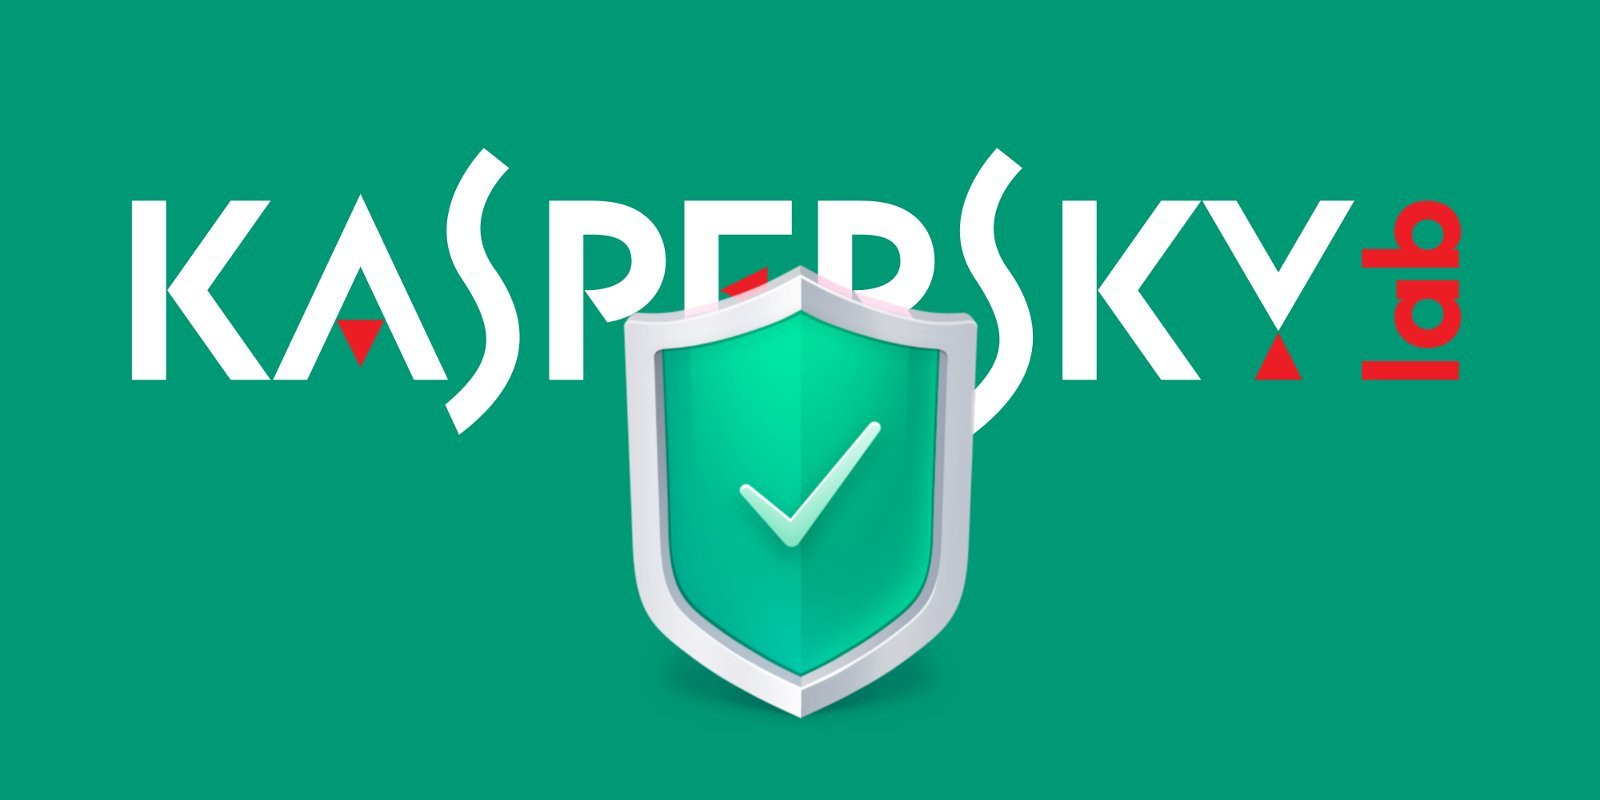 Kaspersky: Защита от опасных компьютерных вирусов!